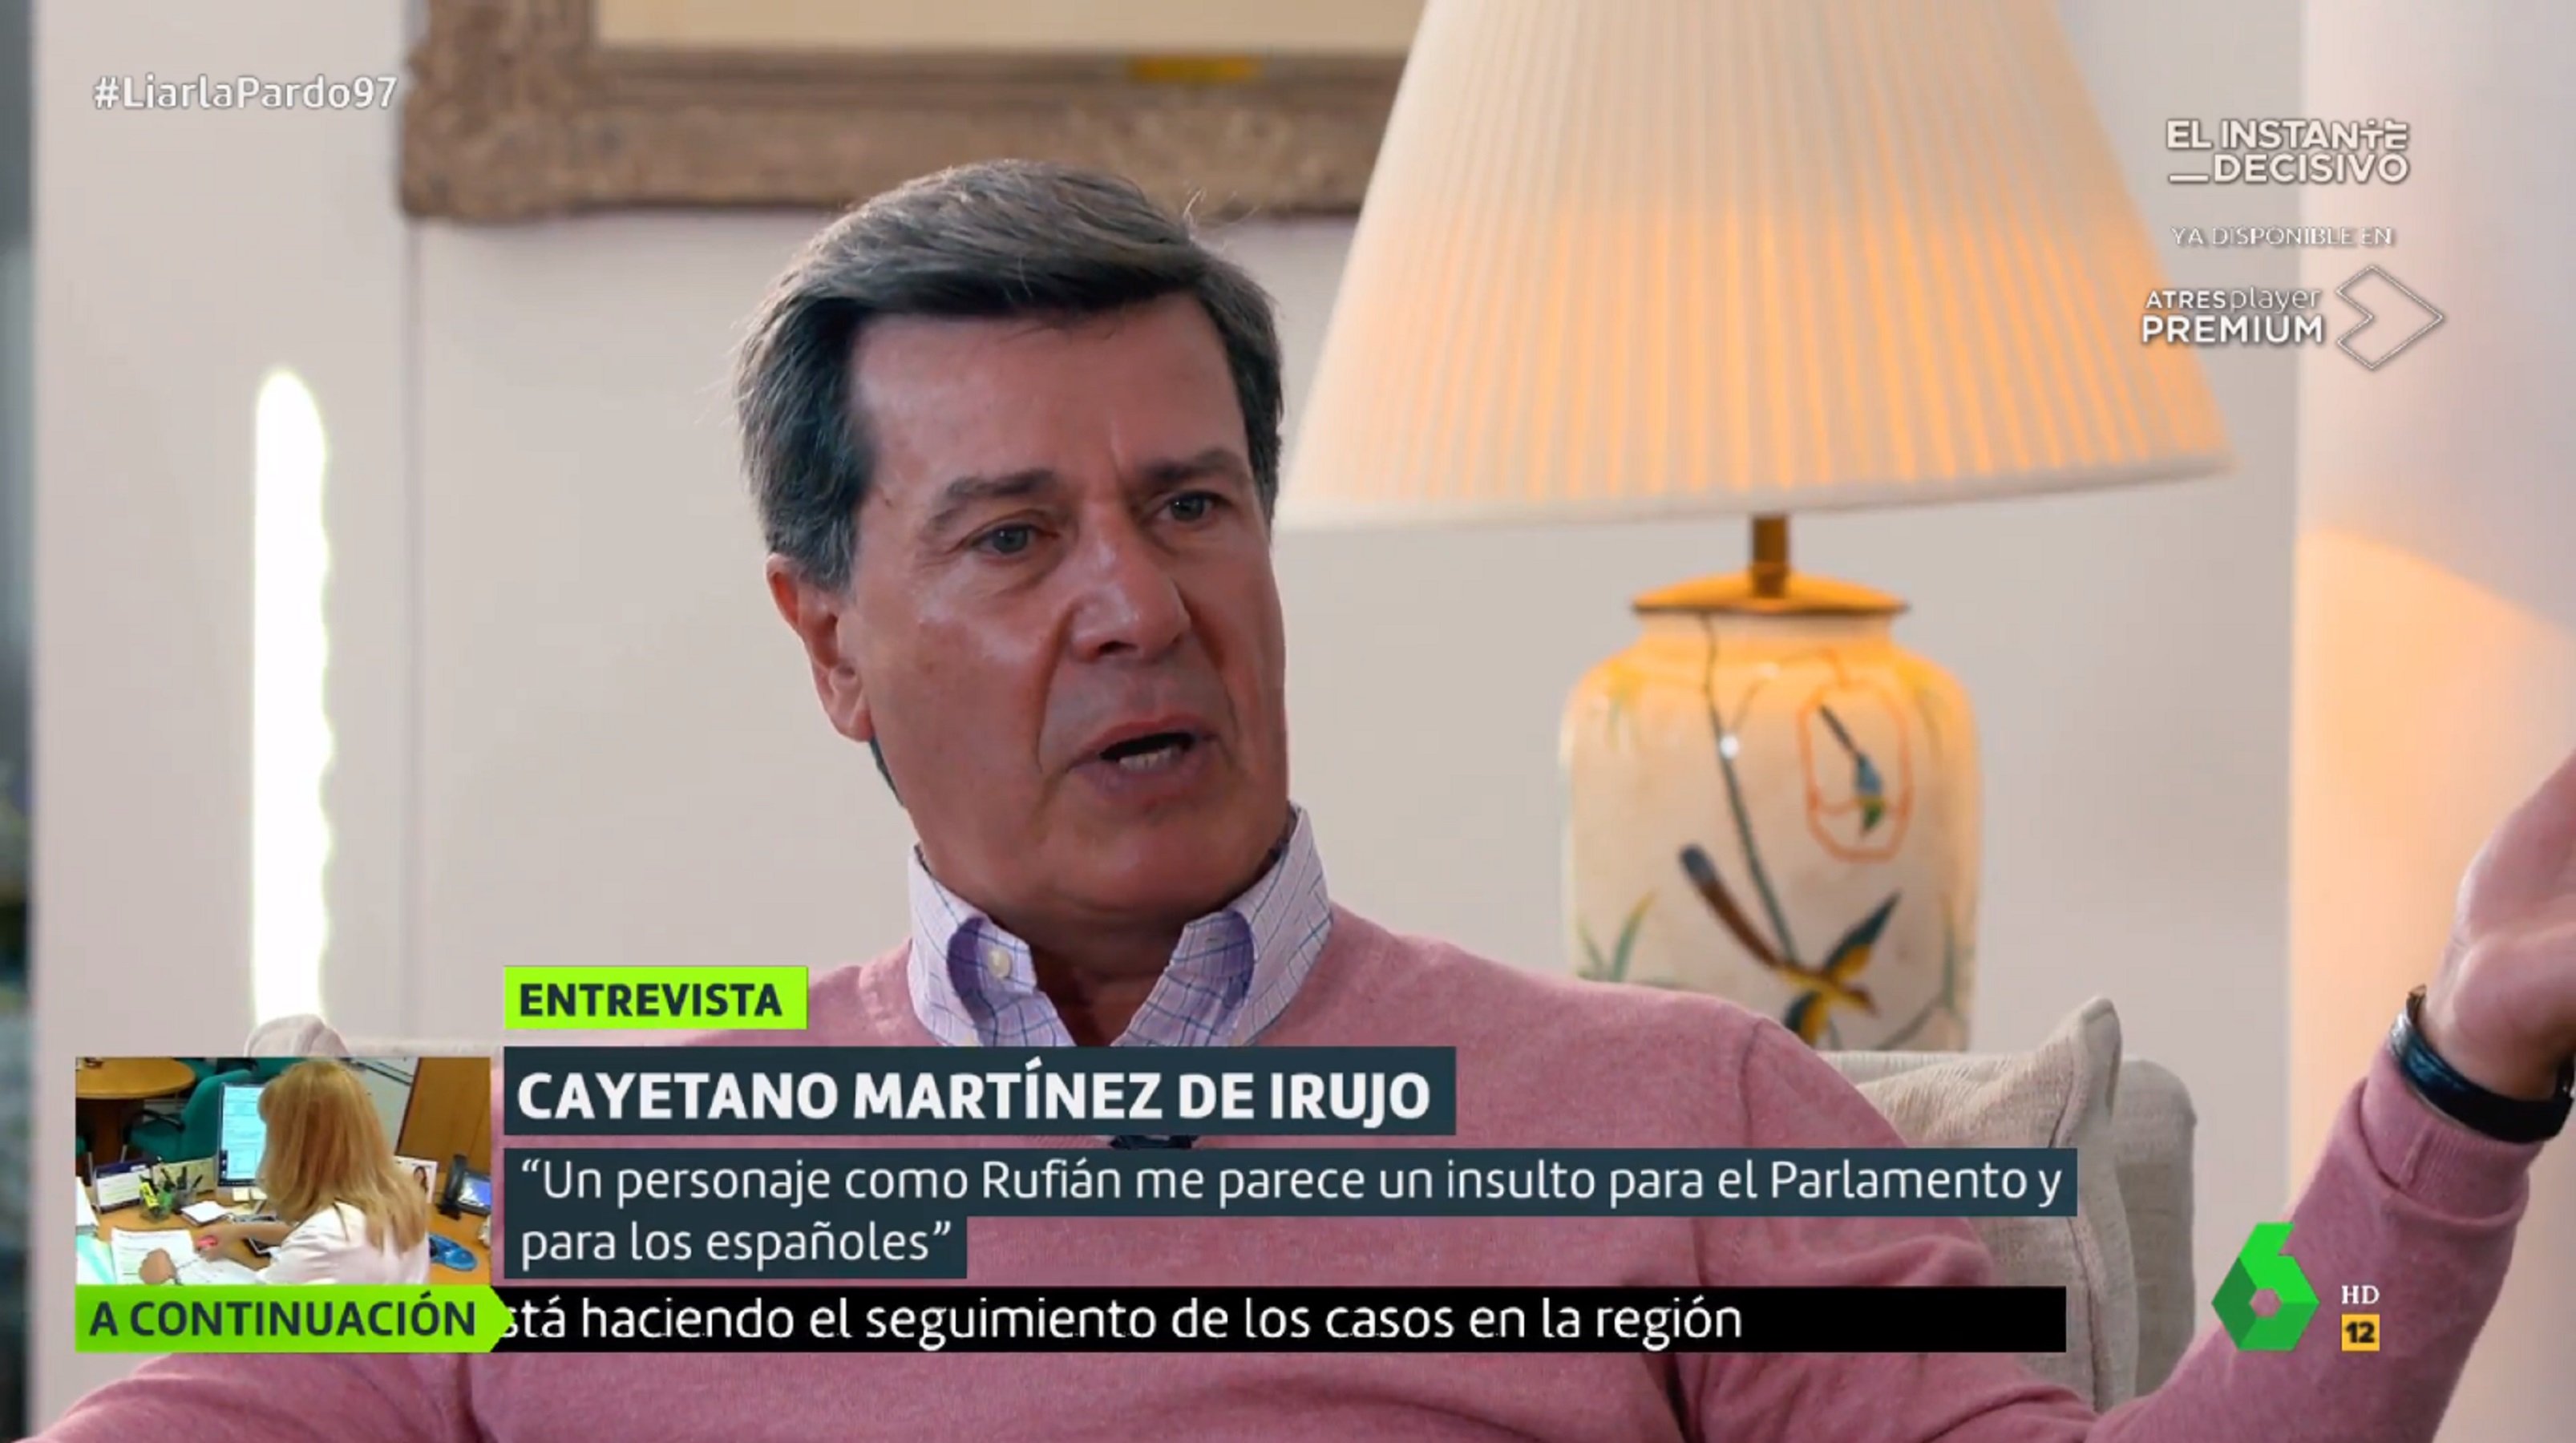 Cayetano Mtz. de Irujo, desfermat contra Rufián: "Es un insulto a los españoles"